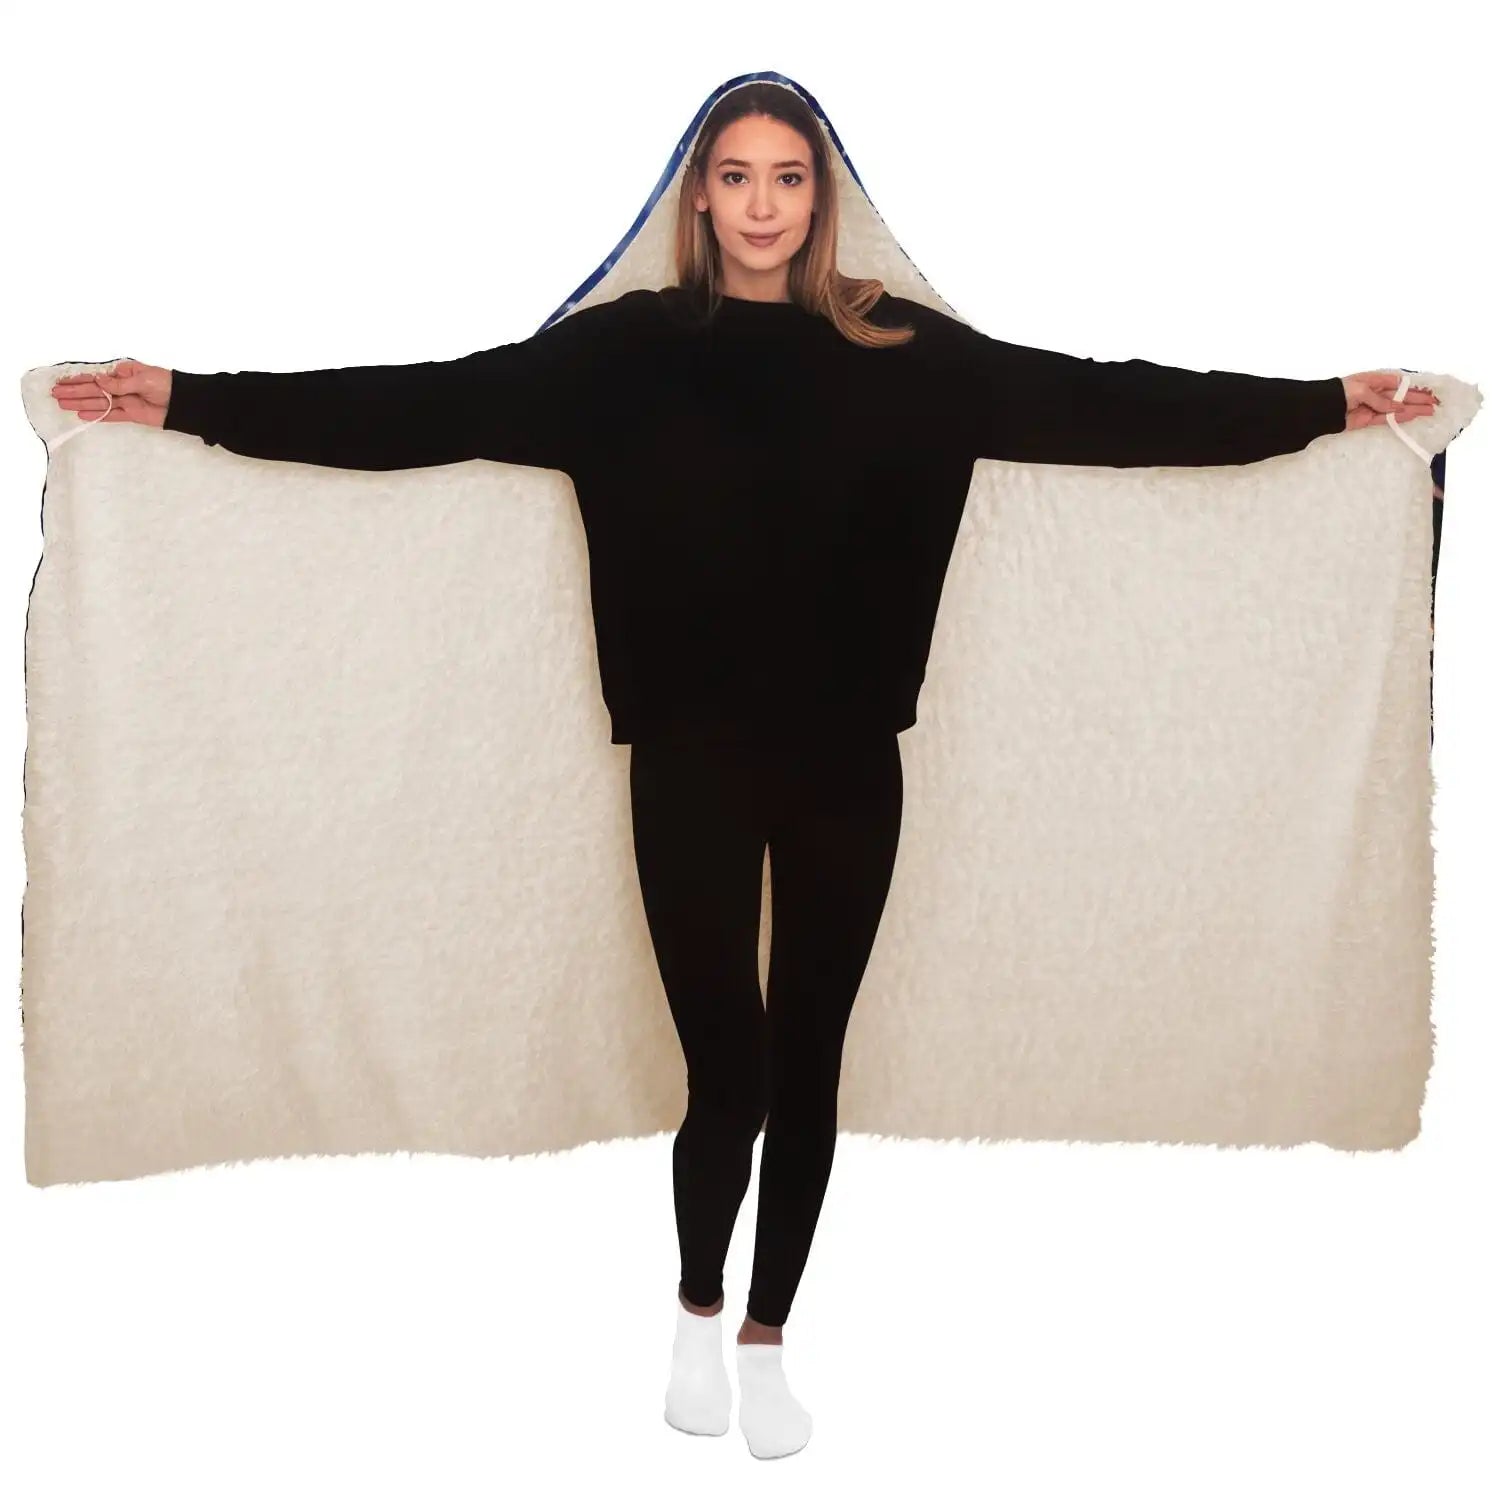 Unisex Stylish Adult Hooded Blanket